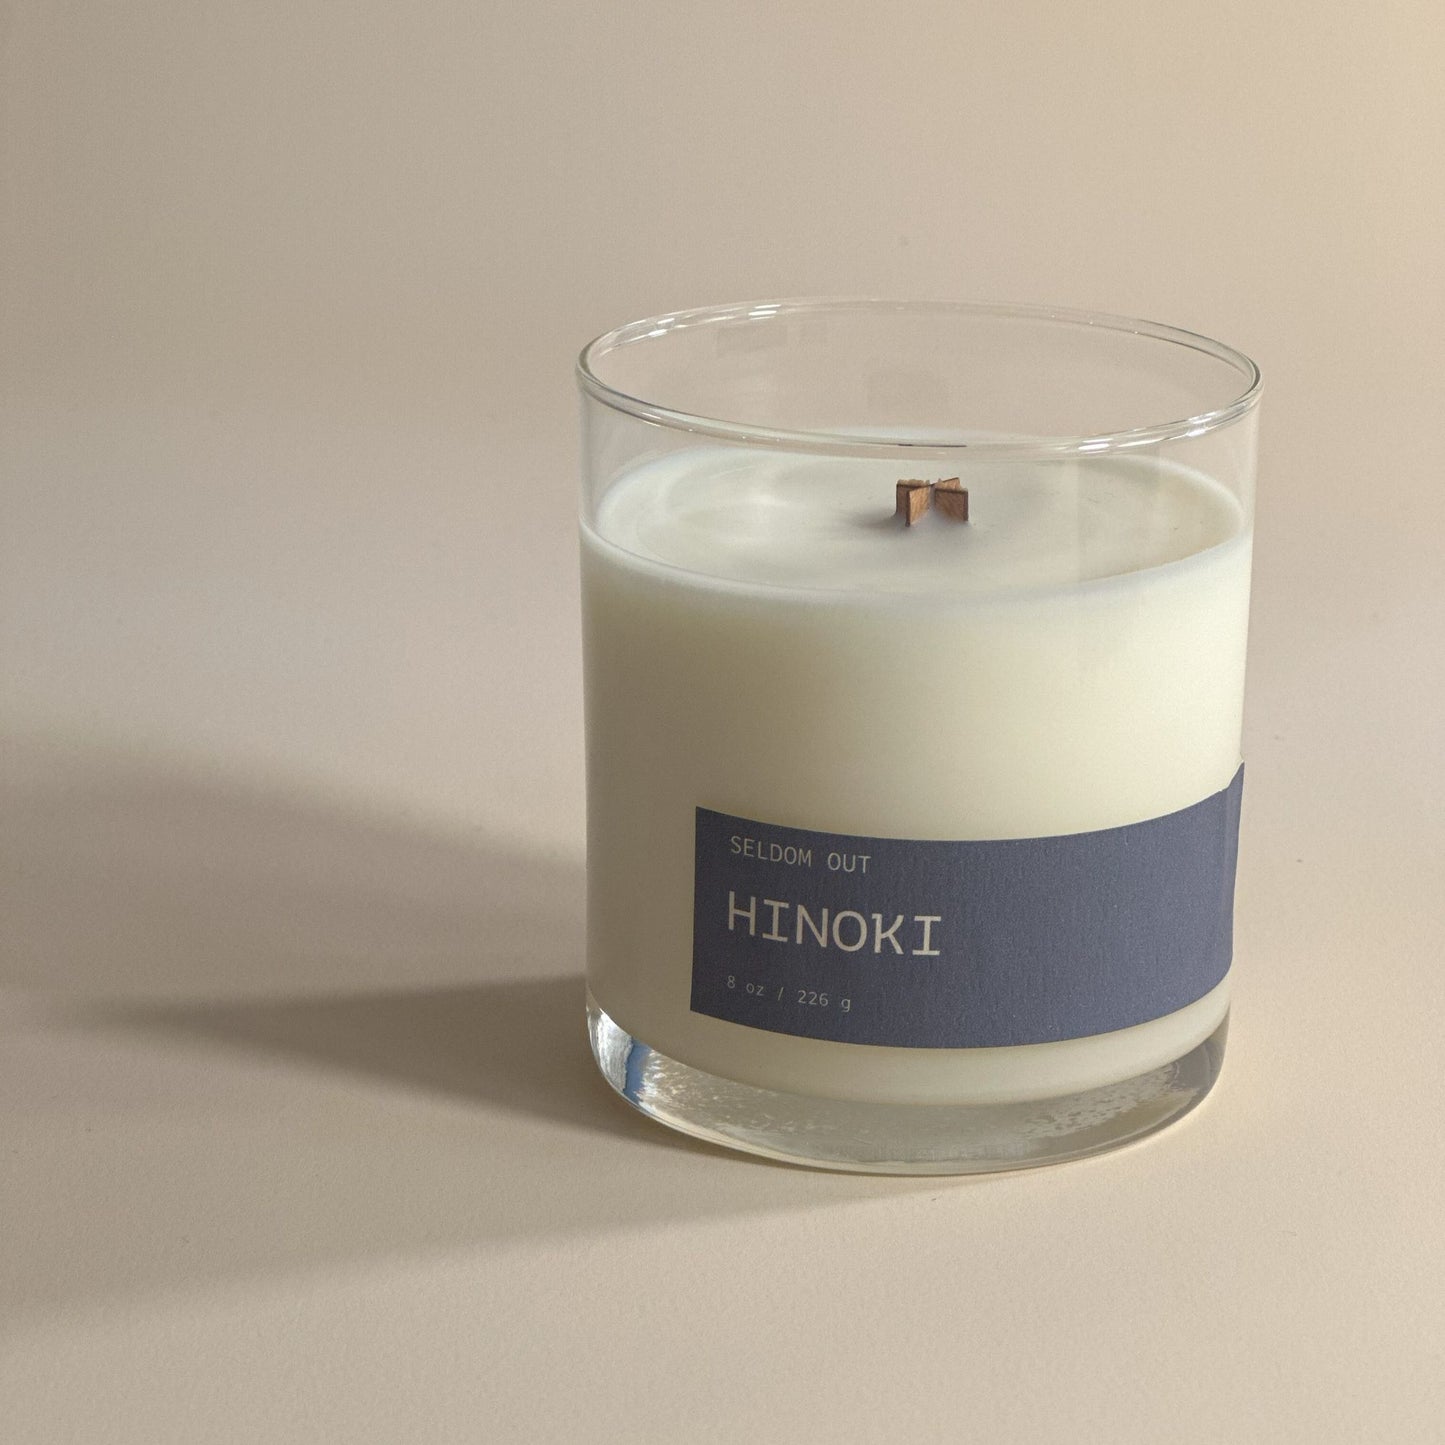 Hinoki - 8oz Candle